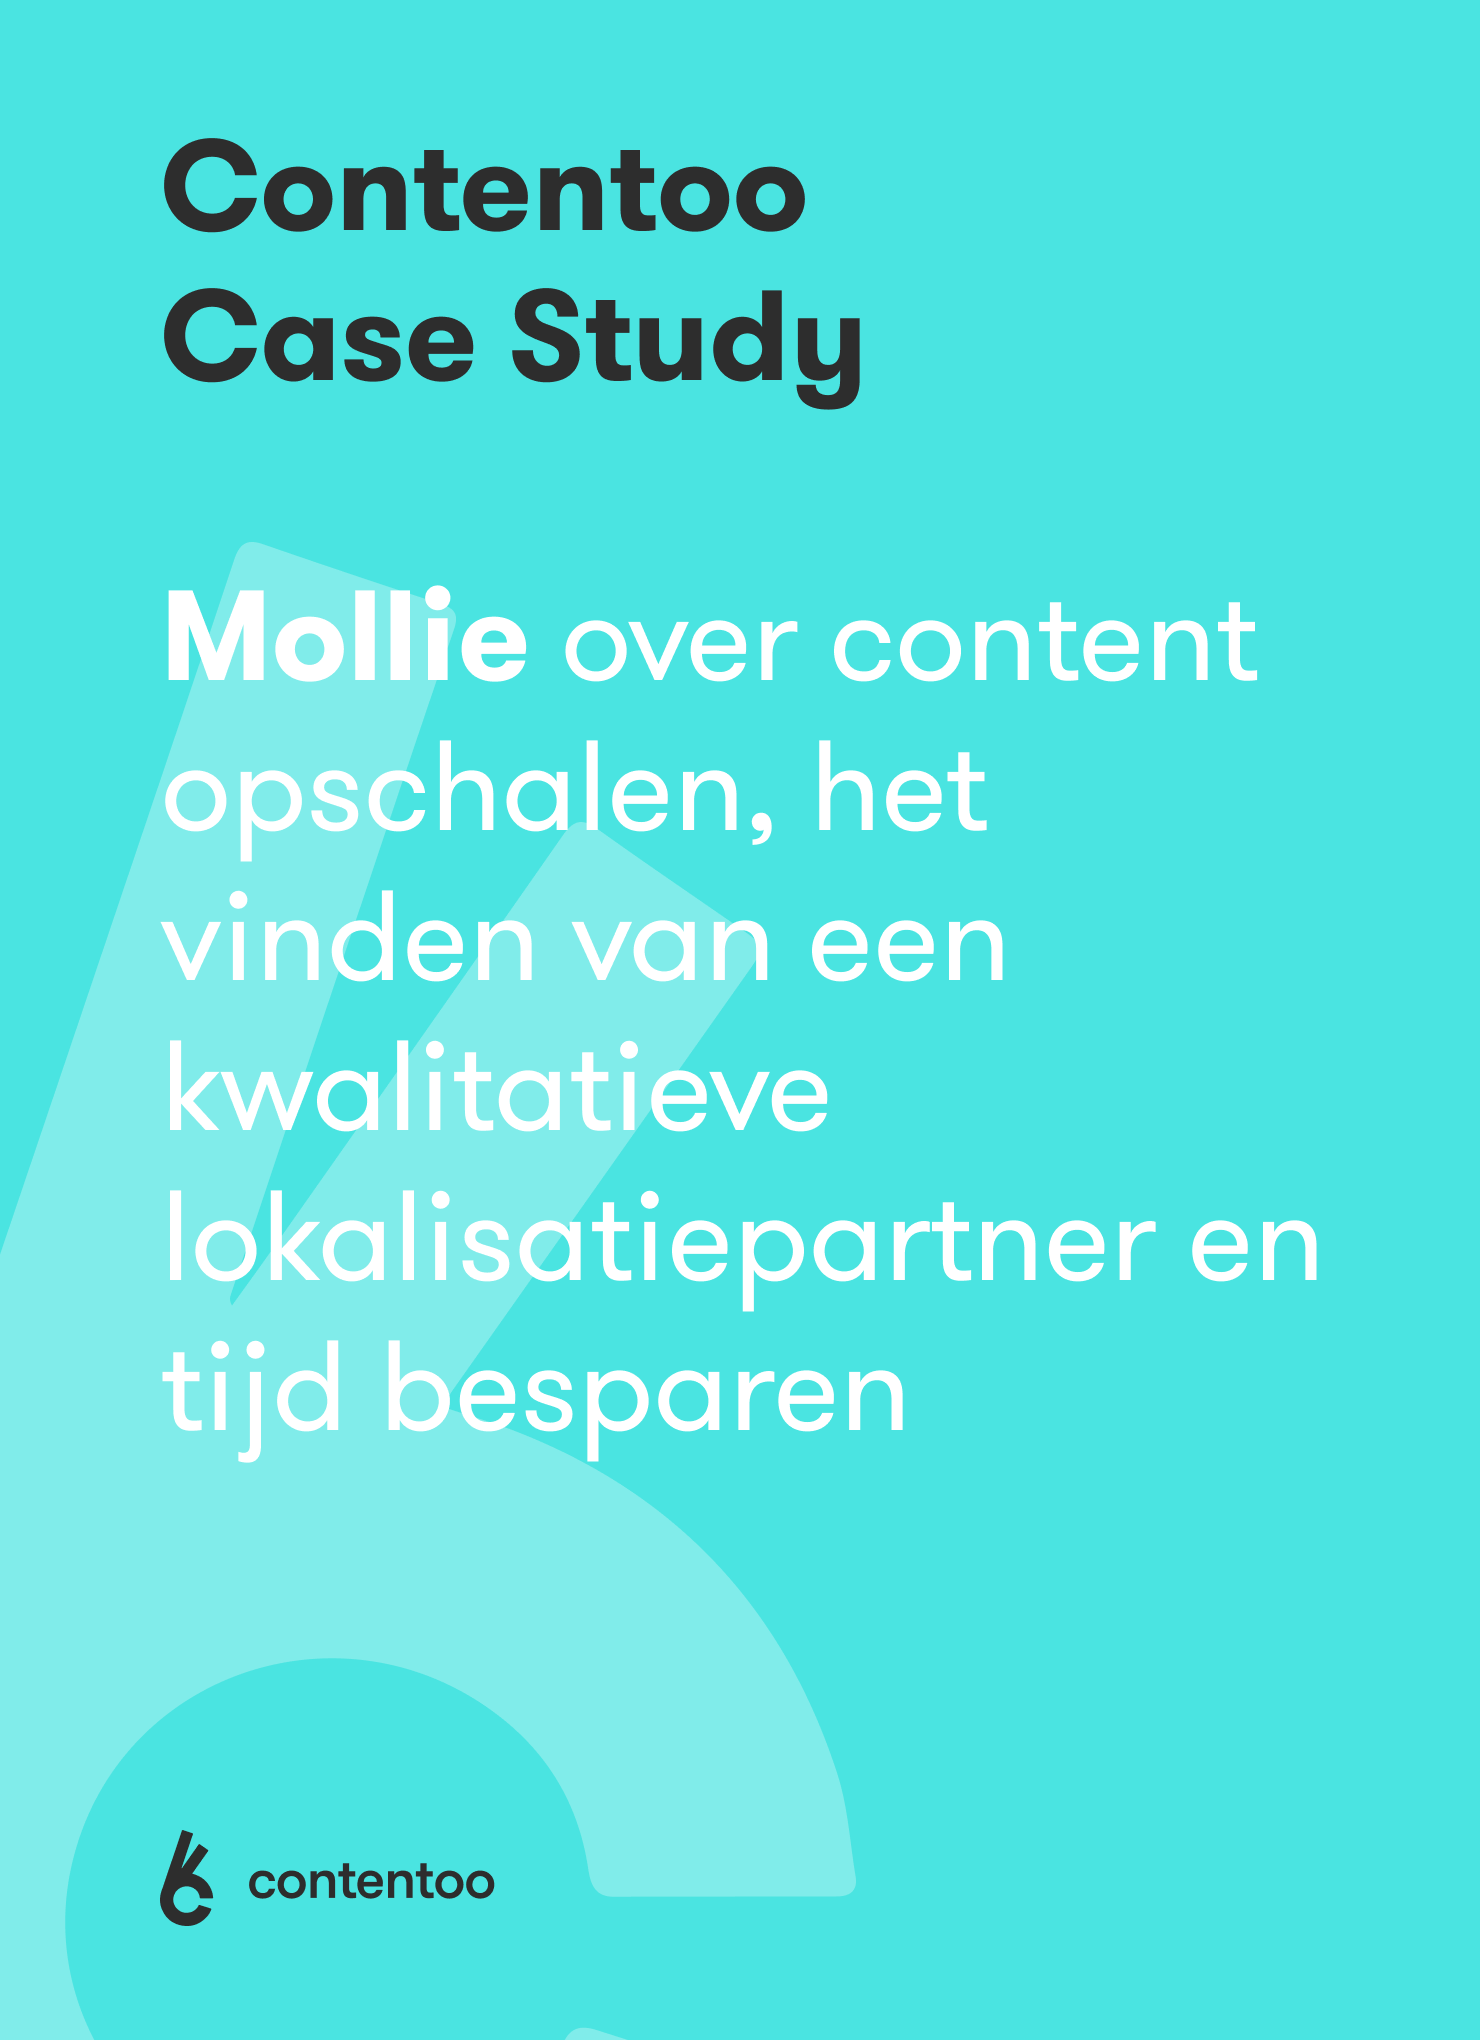 Front Page Mollie Case Study Dutch